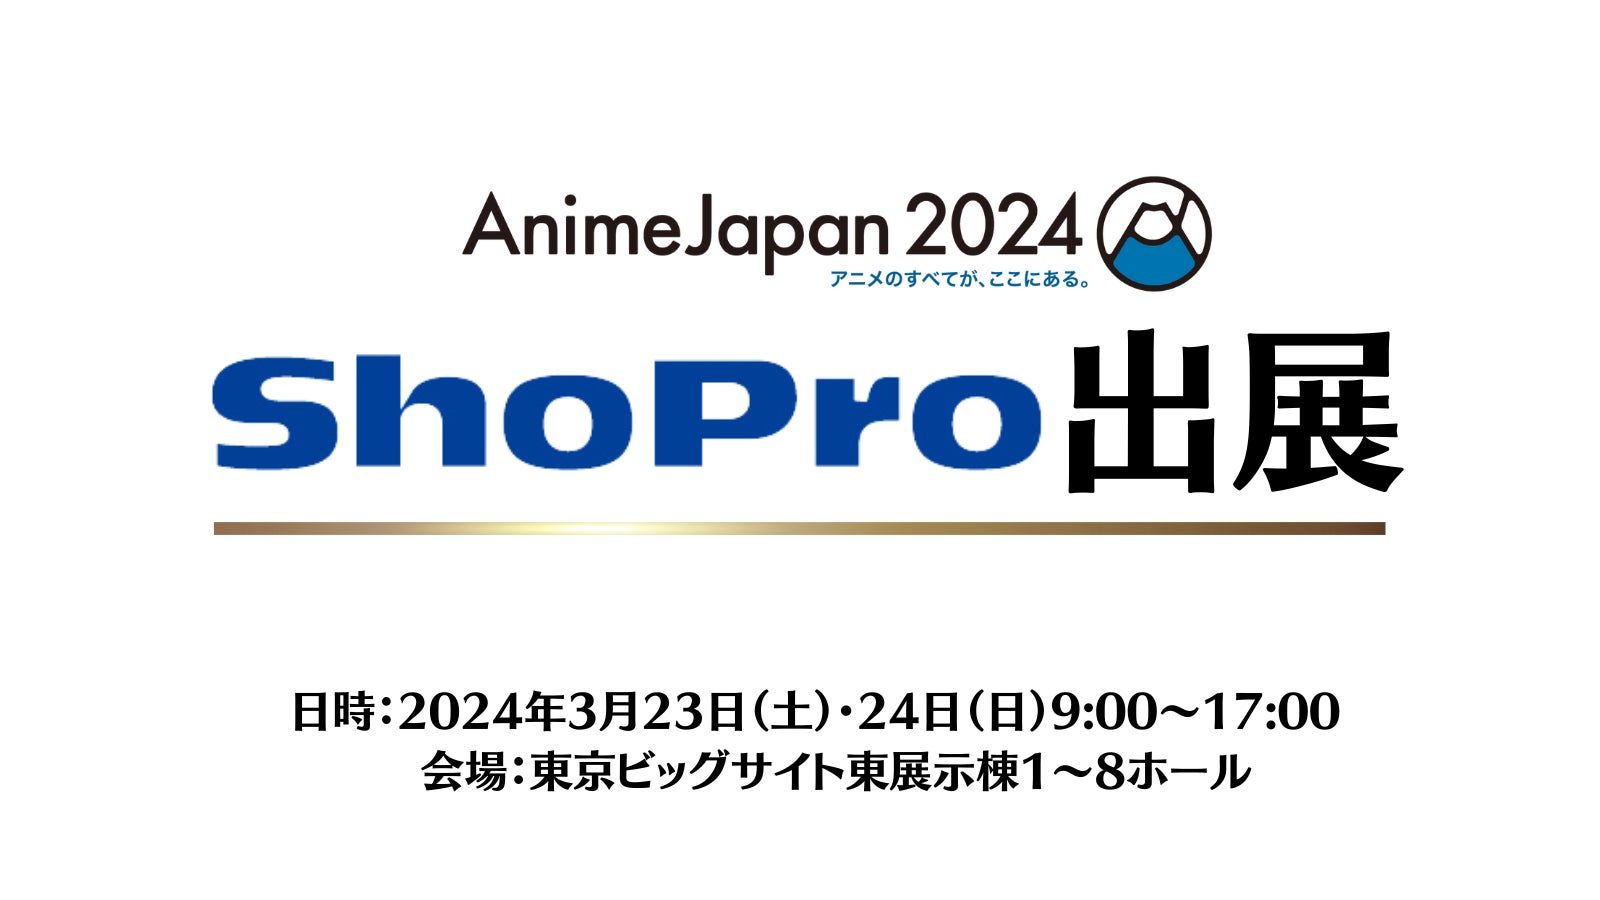 人気作品から注目の最新作品が大集結！「AnimeJapan 2024」注目のAJステージラインナップ全44プログラムほか、最新情報を一挙公開！